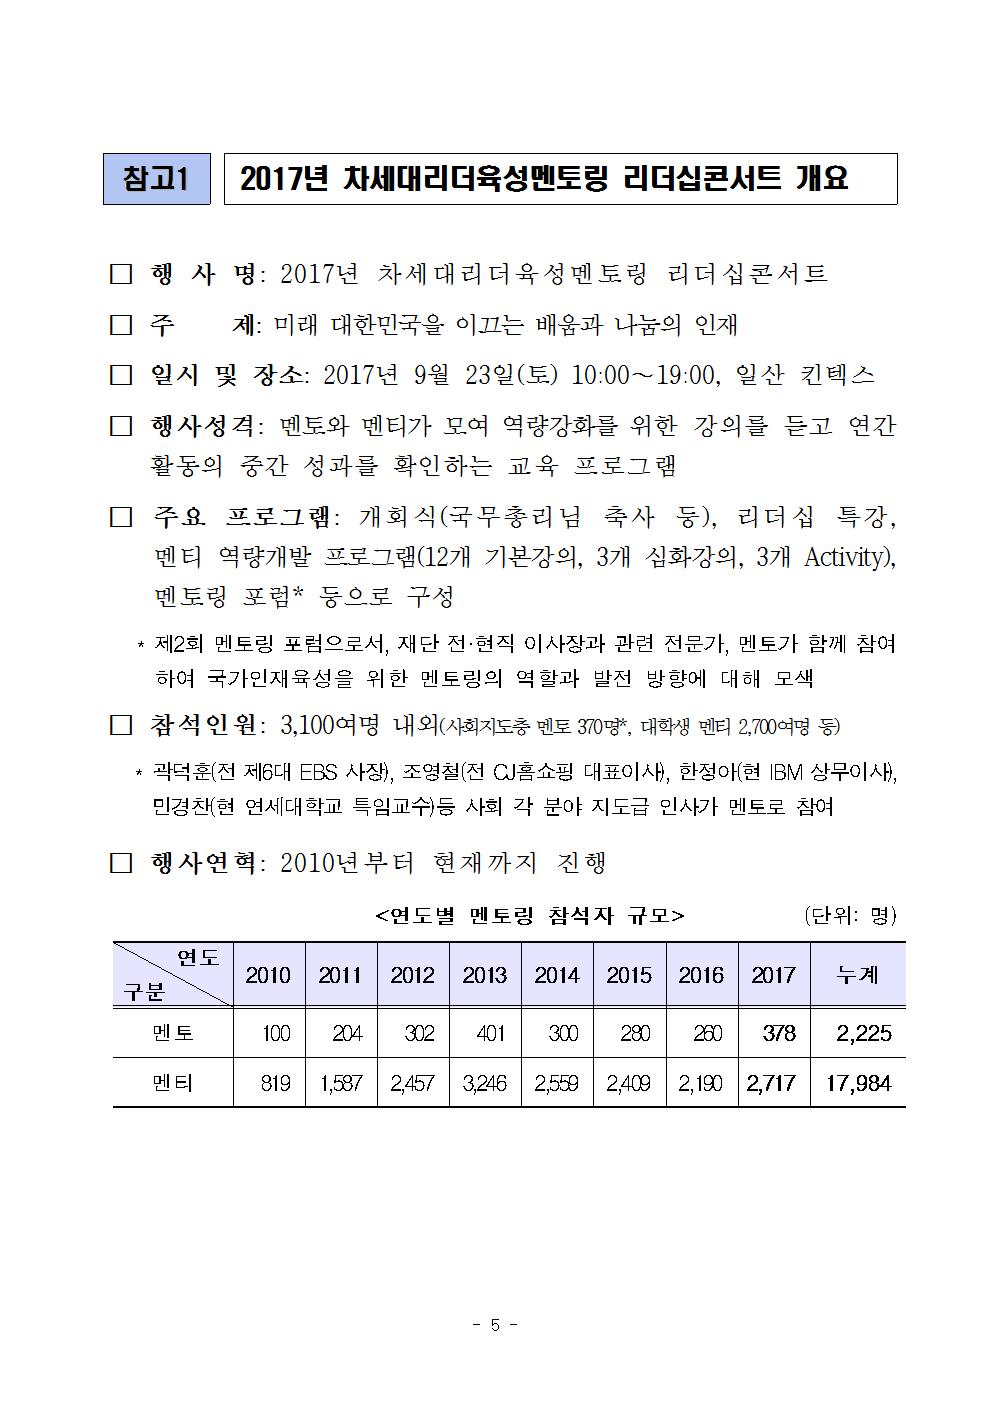 09-23(토)[보도자료] 2017년 차세대리더육성멘토링 리더십콘서트 개최005.jpg